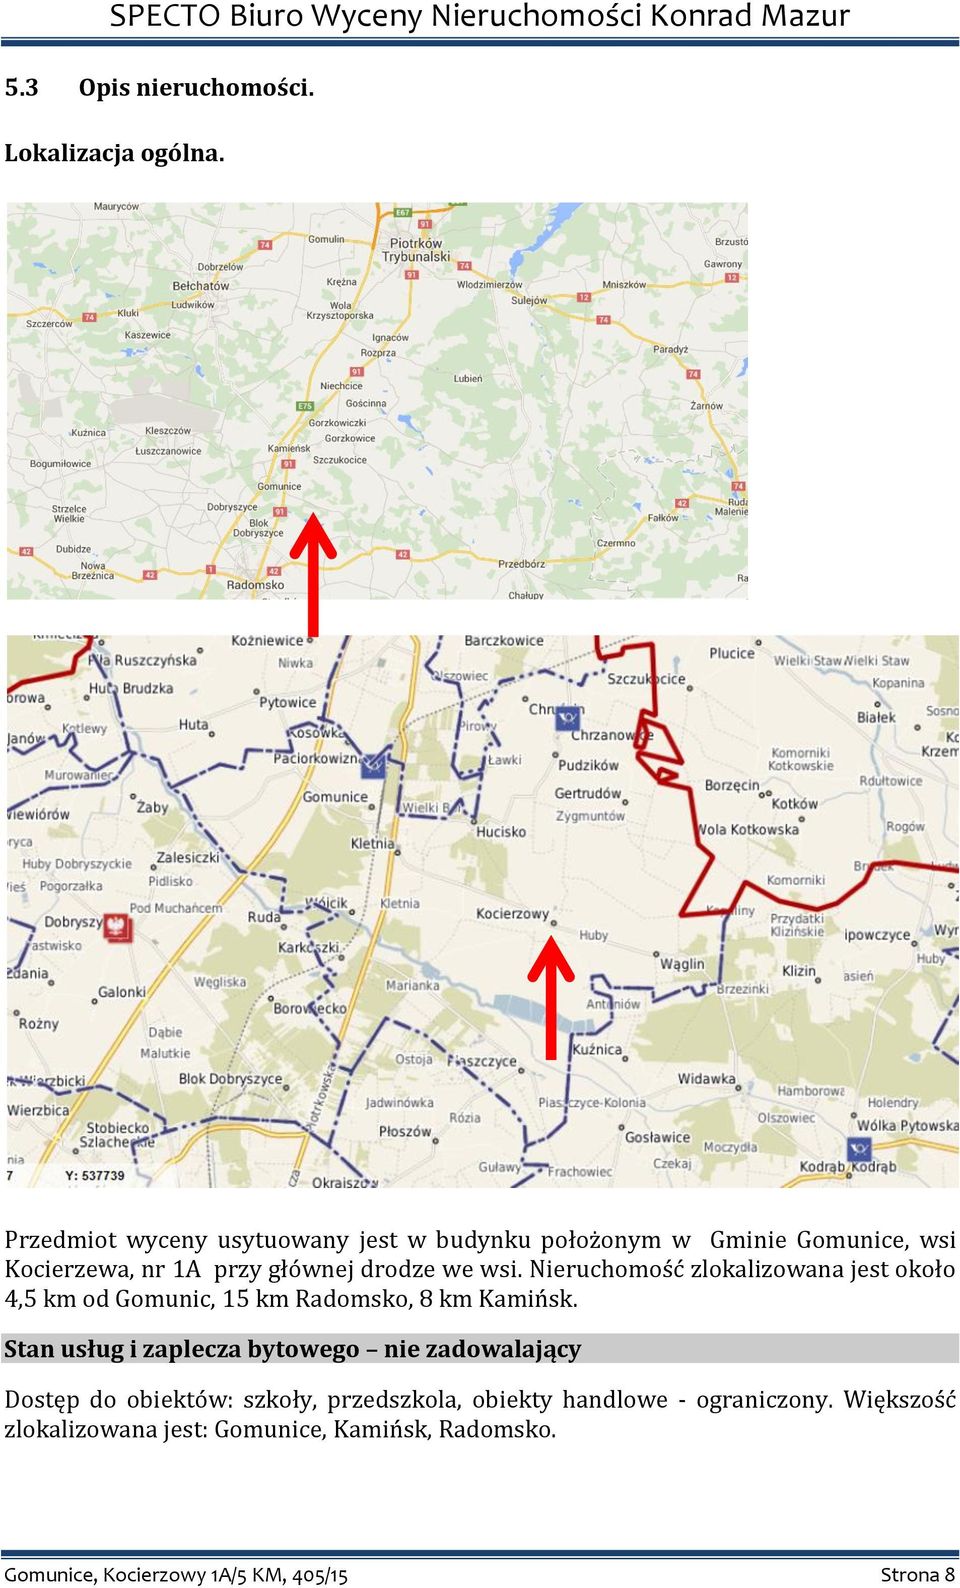 wsi. Nieruchomość zlokalizowana jest około 4,5 km od Gomunic, 15 km Radomsko, 8 km Kamińsk.